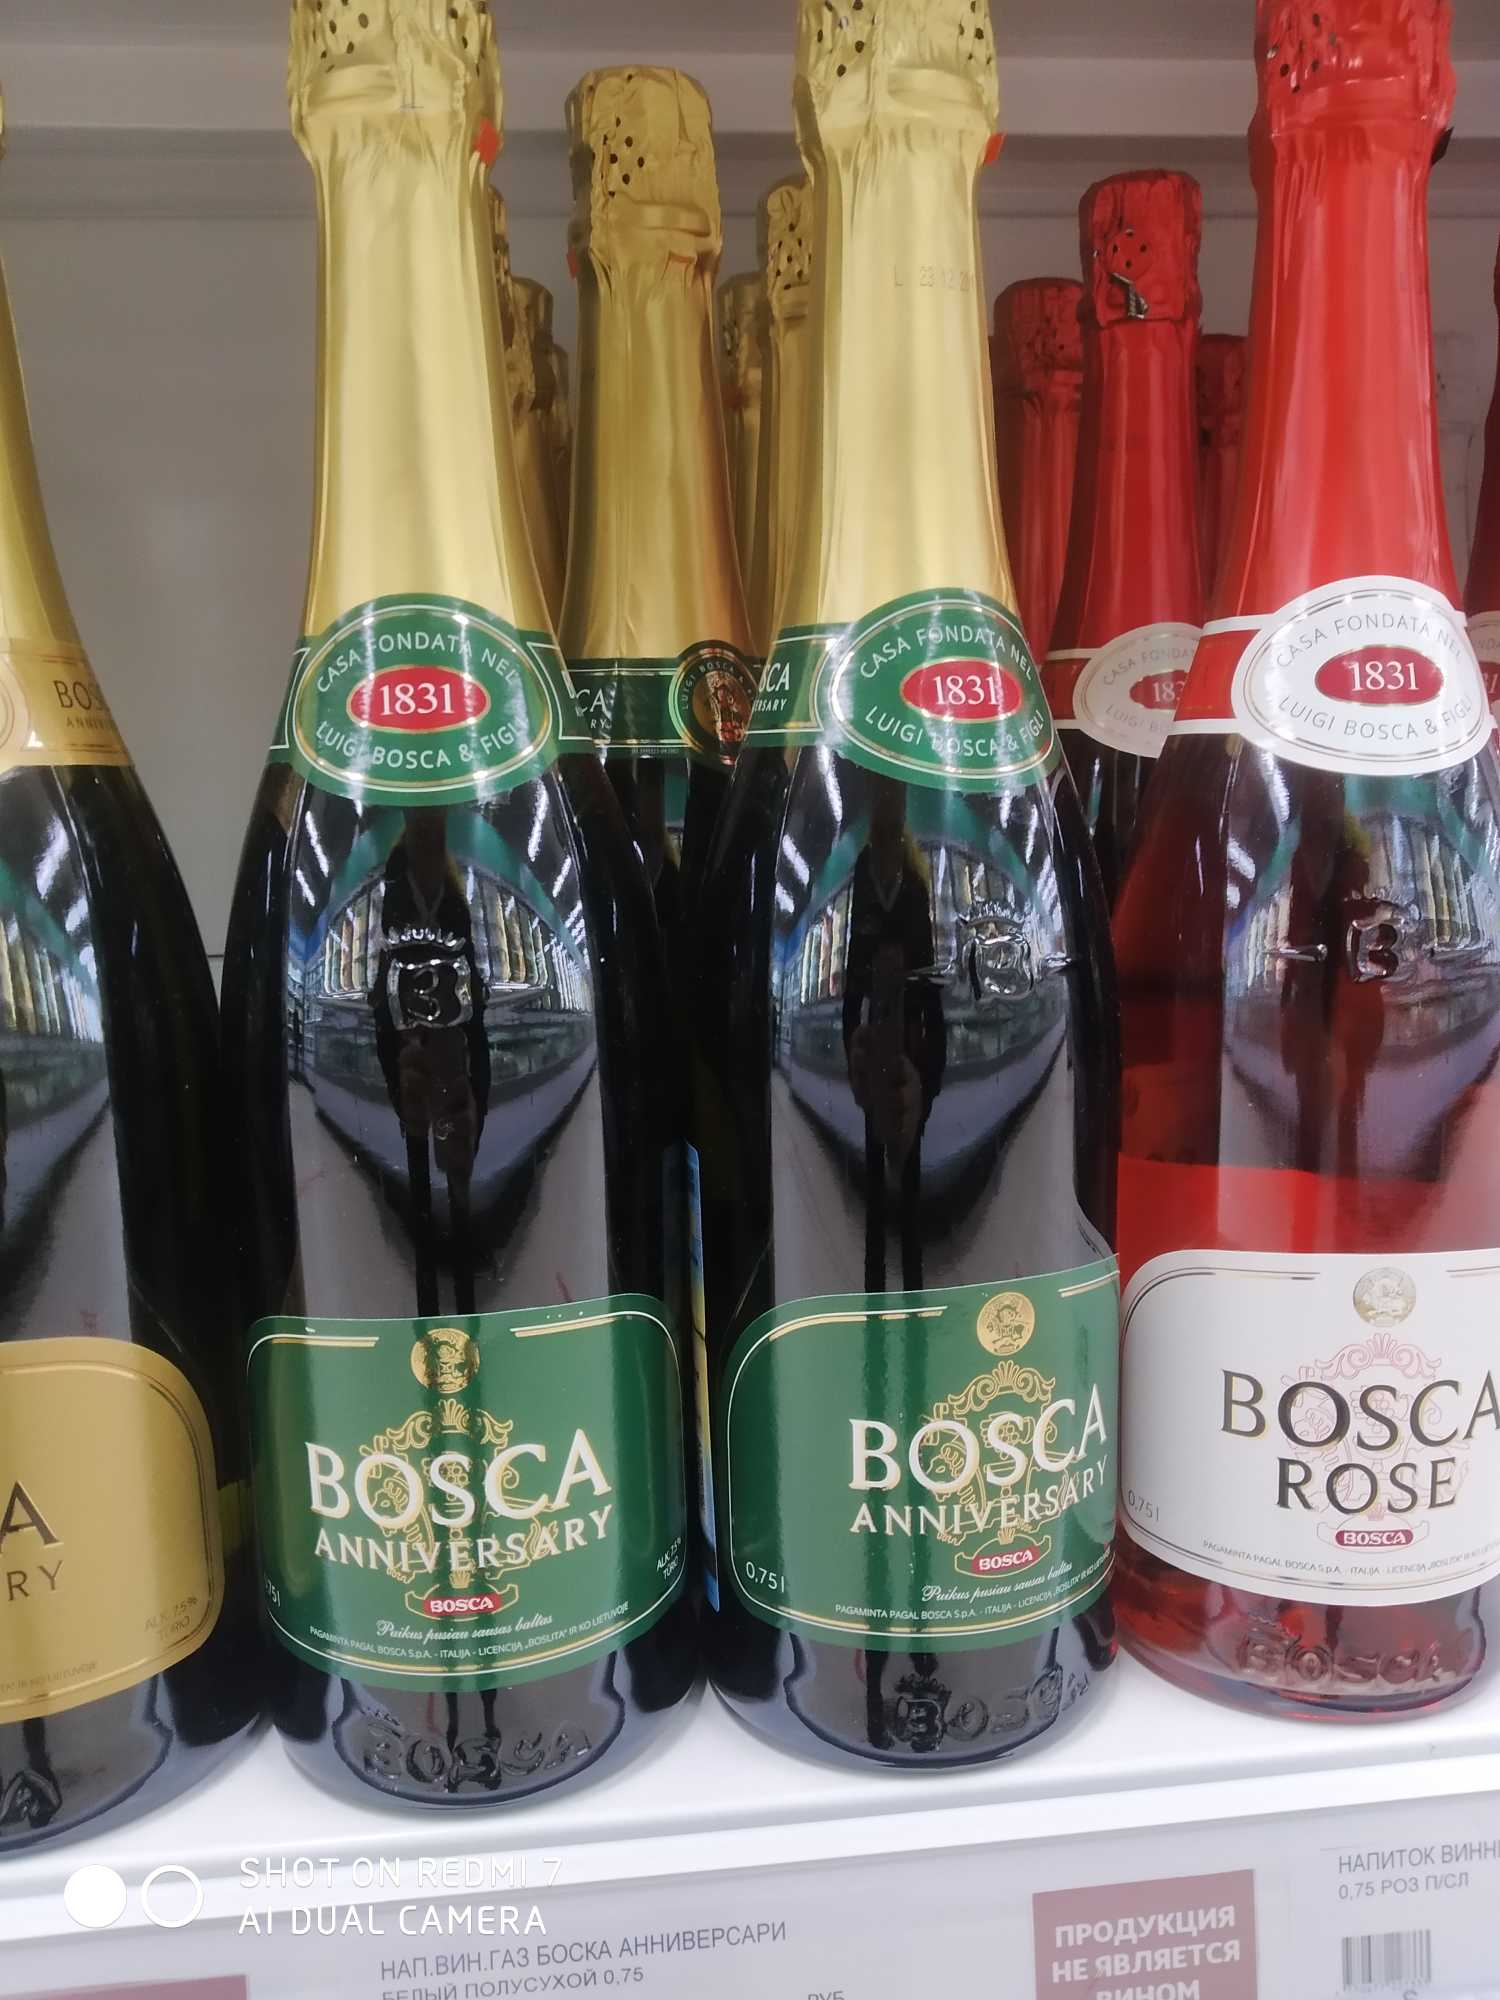 Сколько стоит боско. Винный напиток Bosca Боско. Боско шампанское Анниверсари. Напиток винный Bosca Анниверсари. Винный напиток Bosca Rose 0.75.